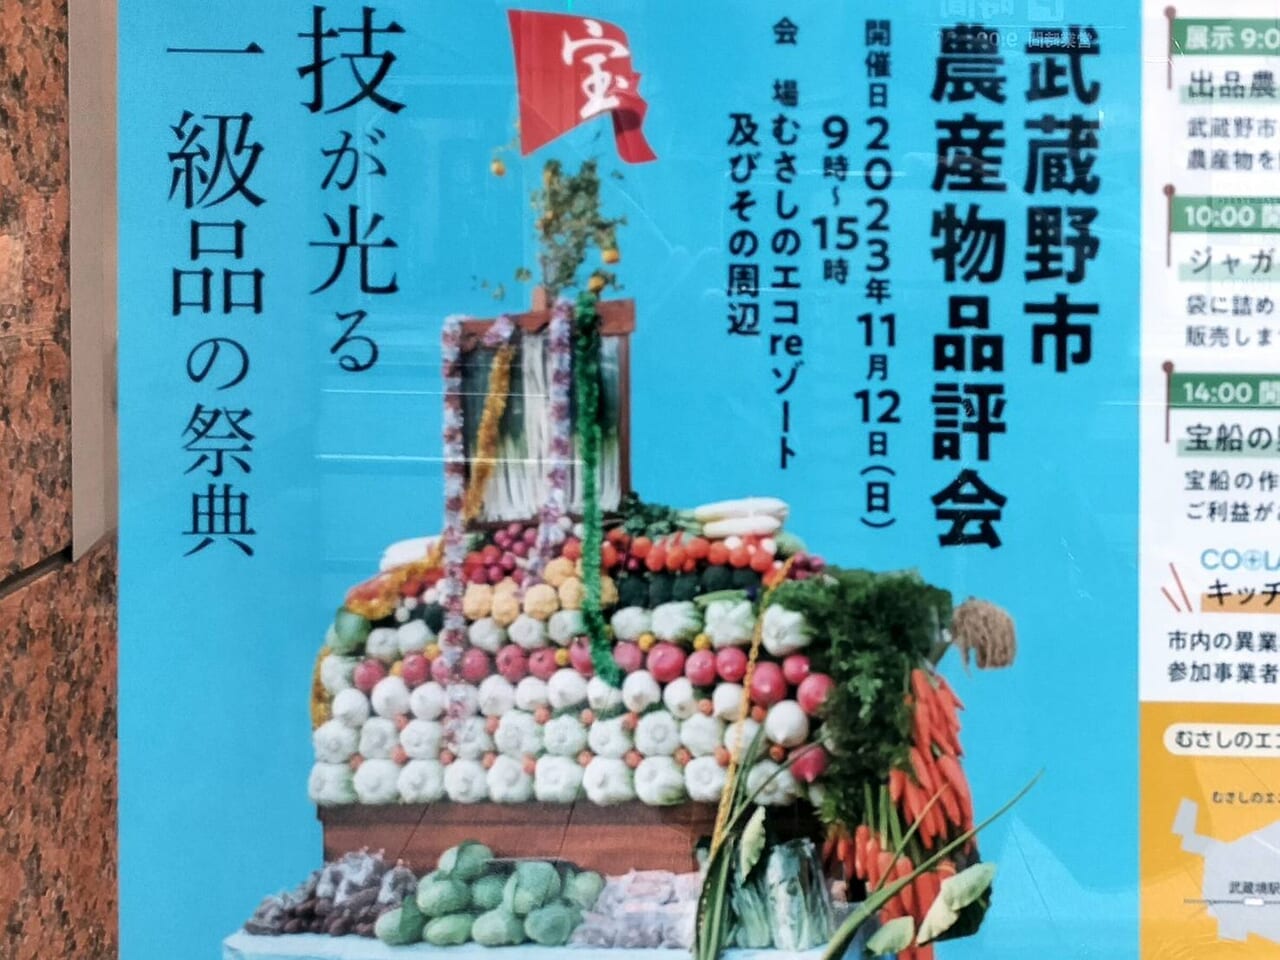 武蔵野農業品評会で配布される宝船